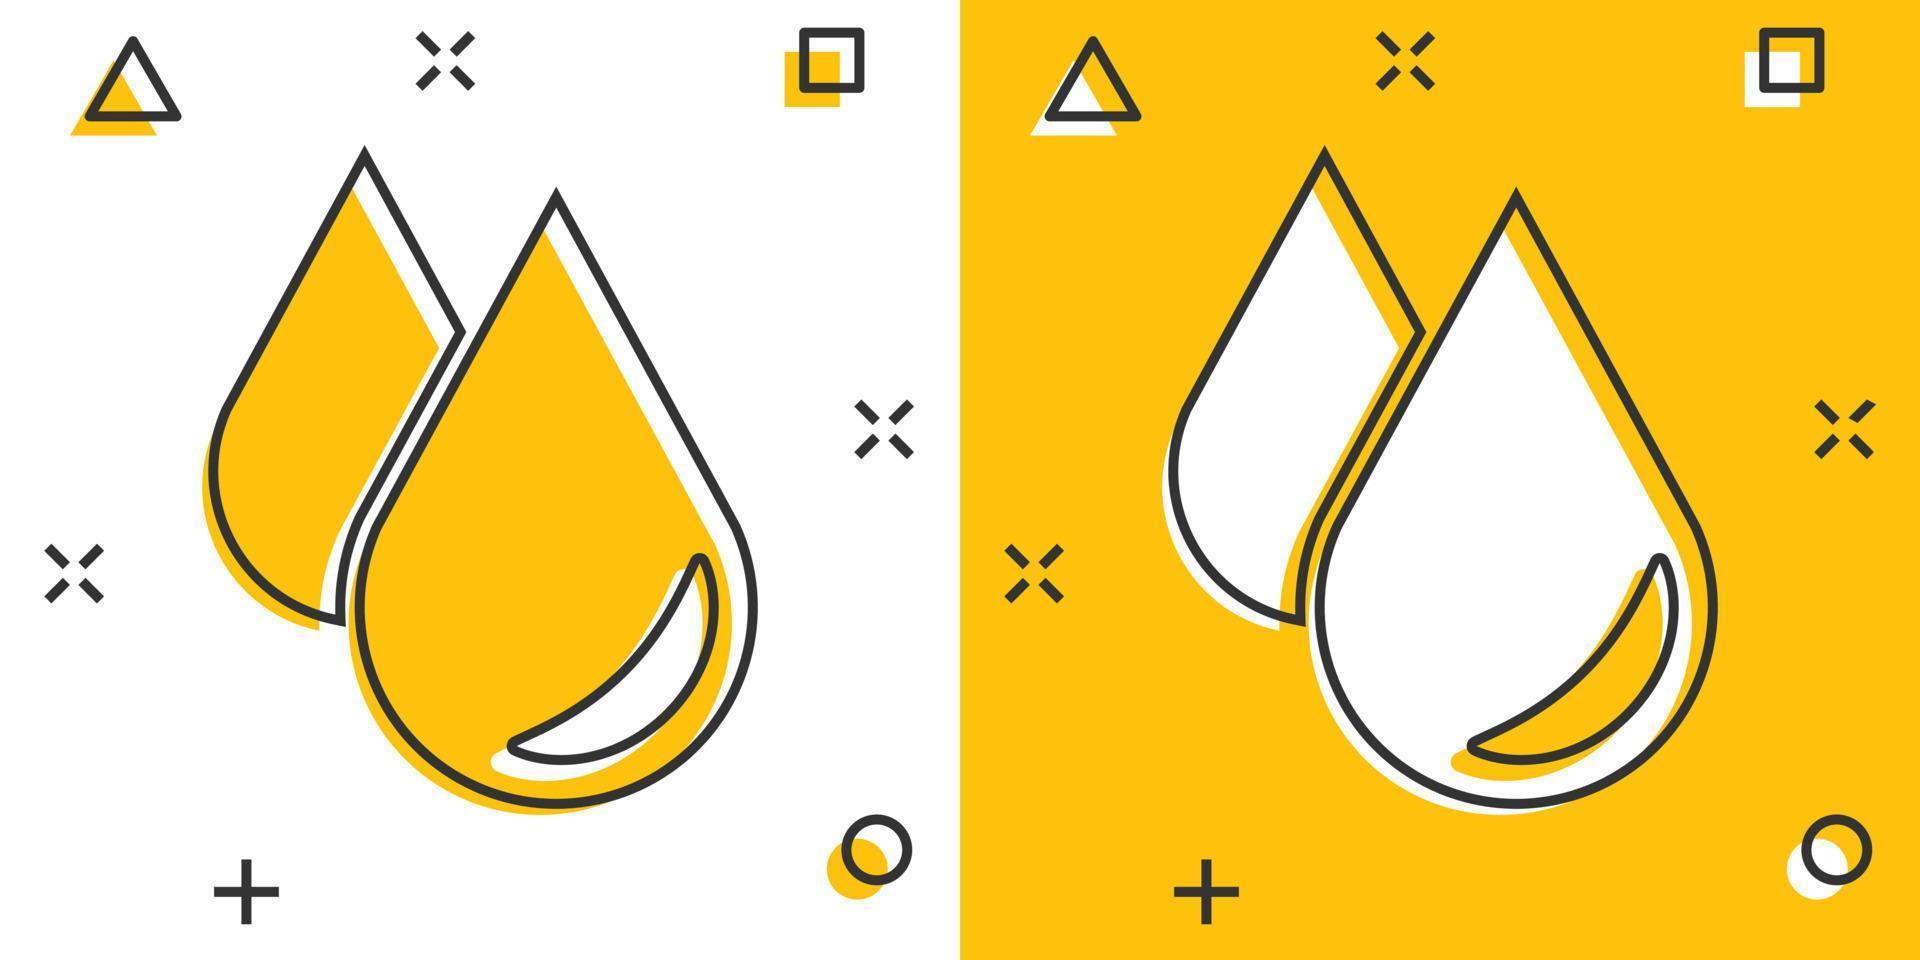 vatten släppa ikon i komisk stil. regndroppe vektor tecknad serie illustration piktogram. liten droppe vatten klick företag begrepp stänk effekt.